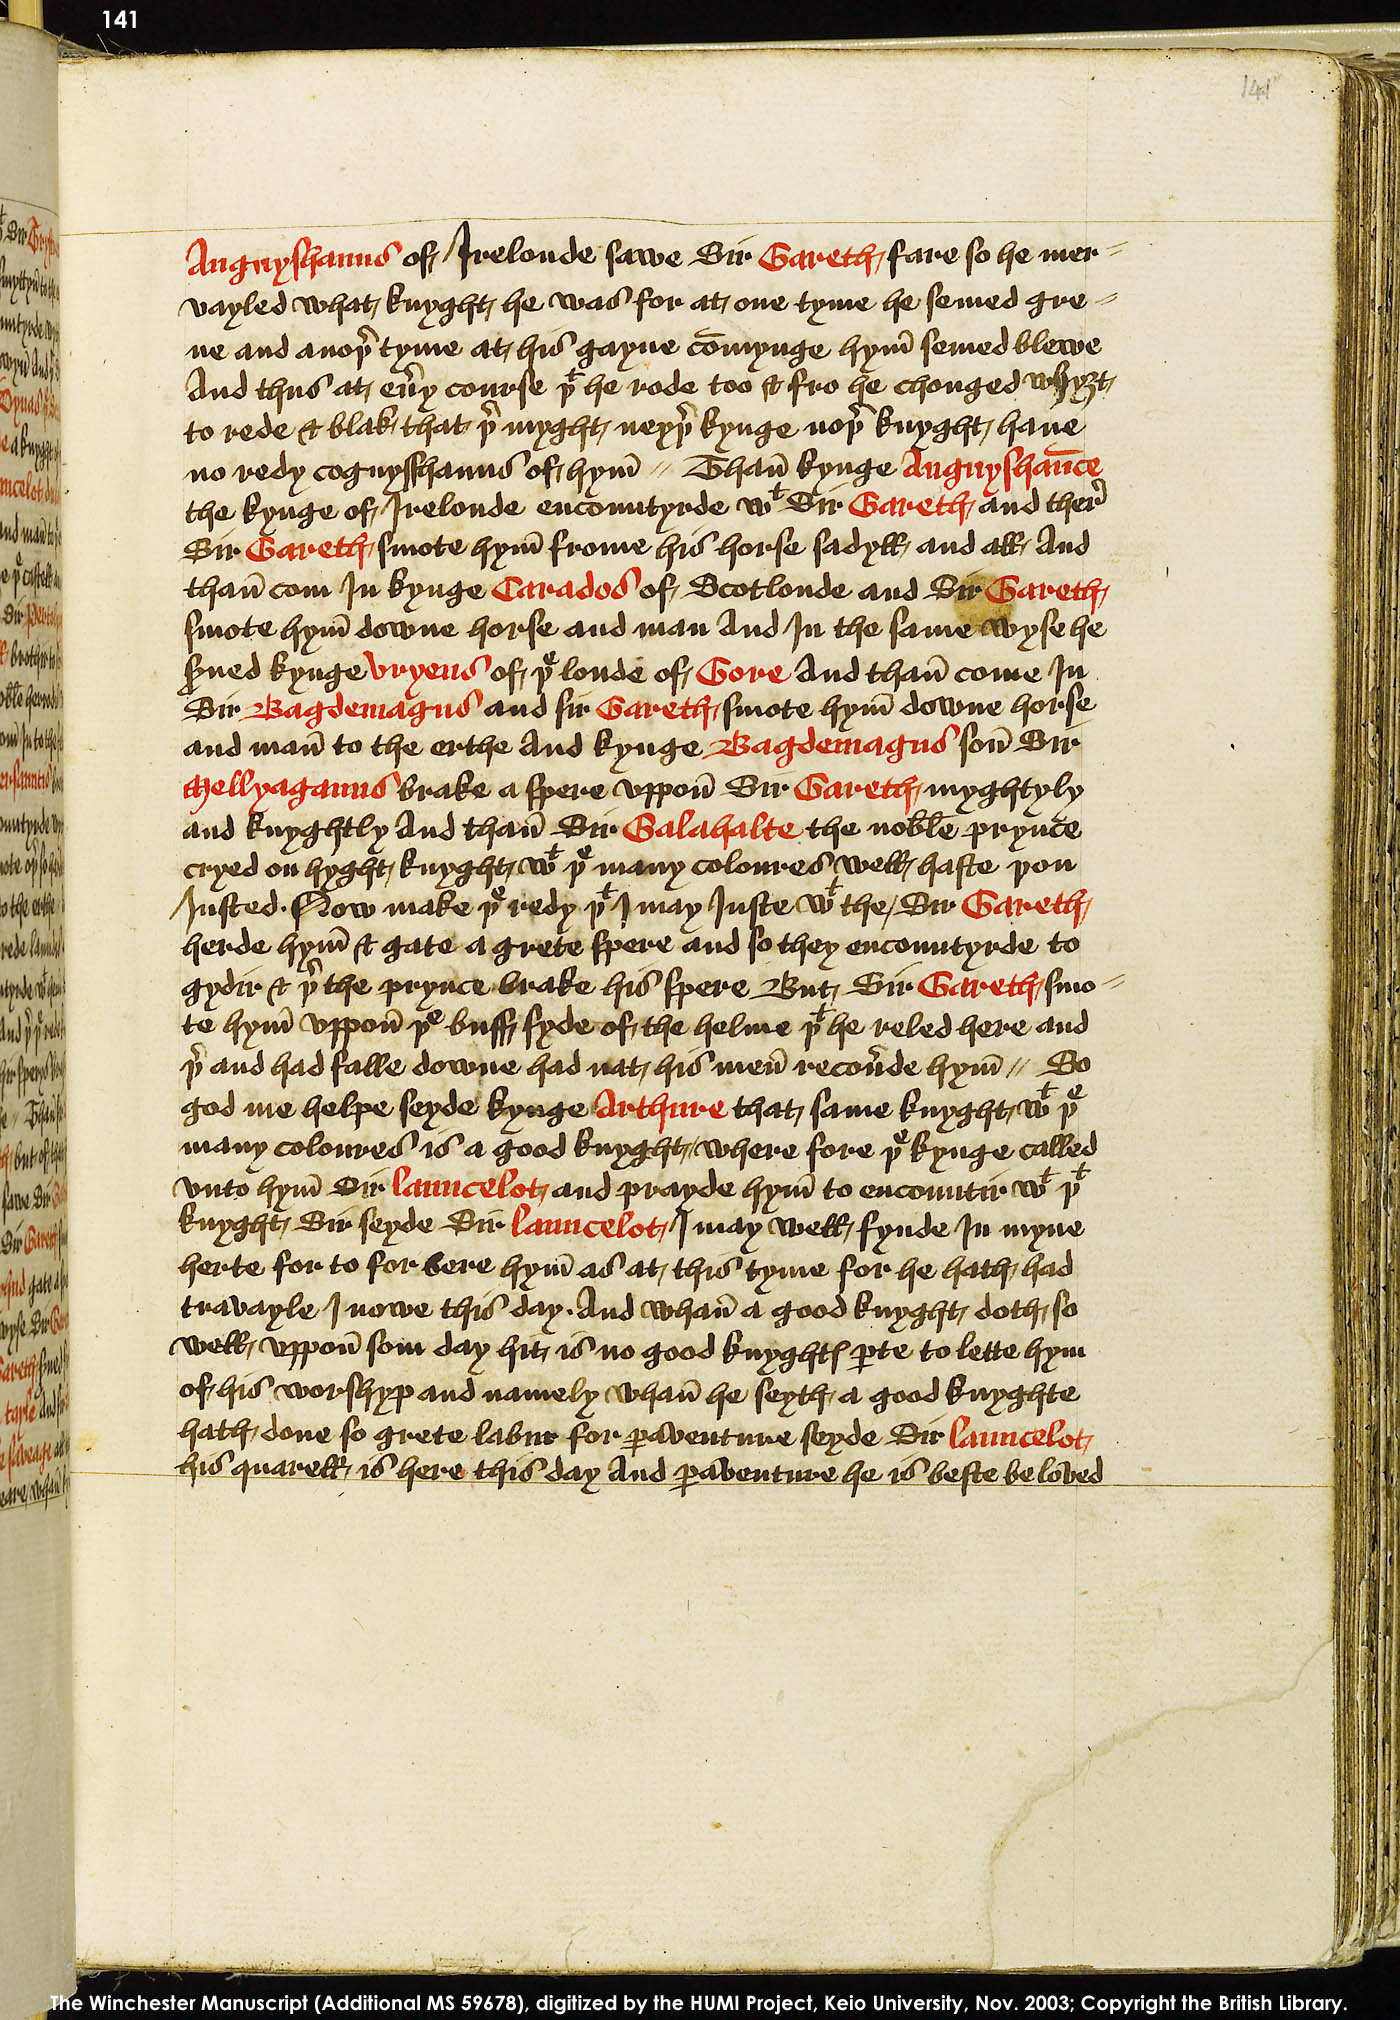 Folio 141r